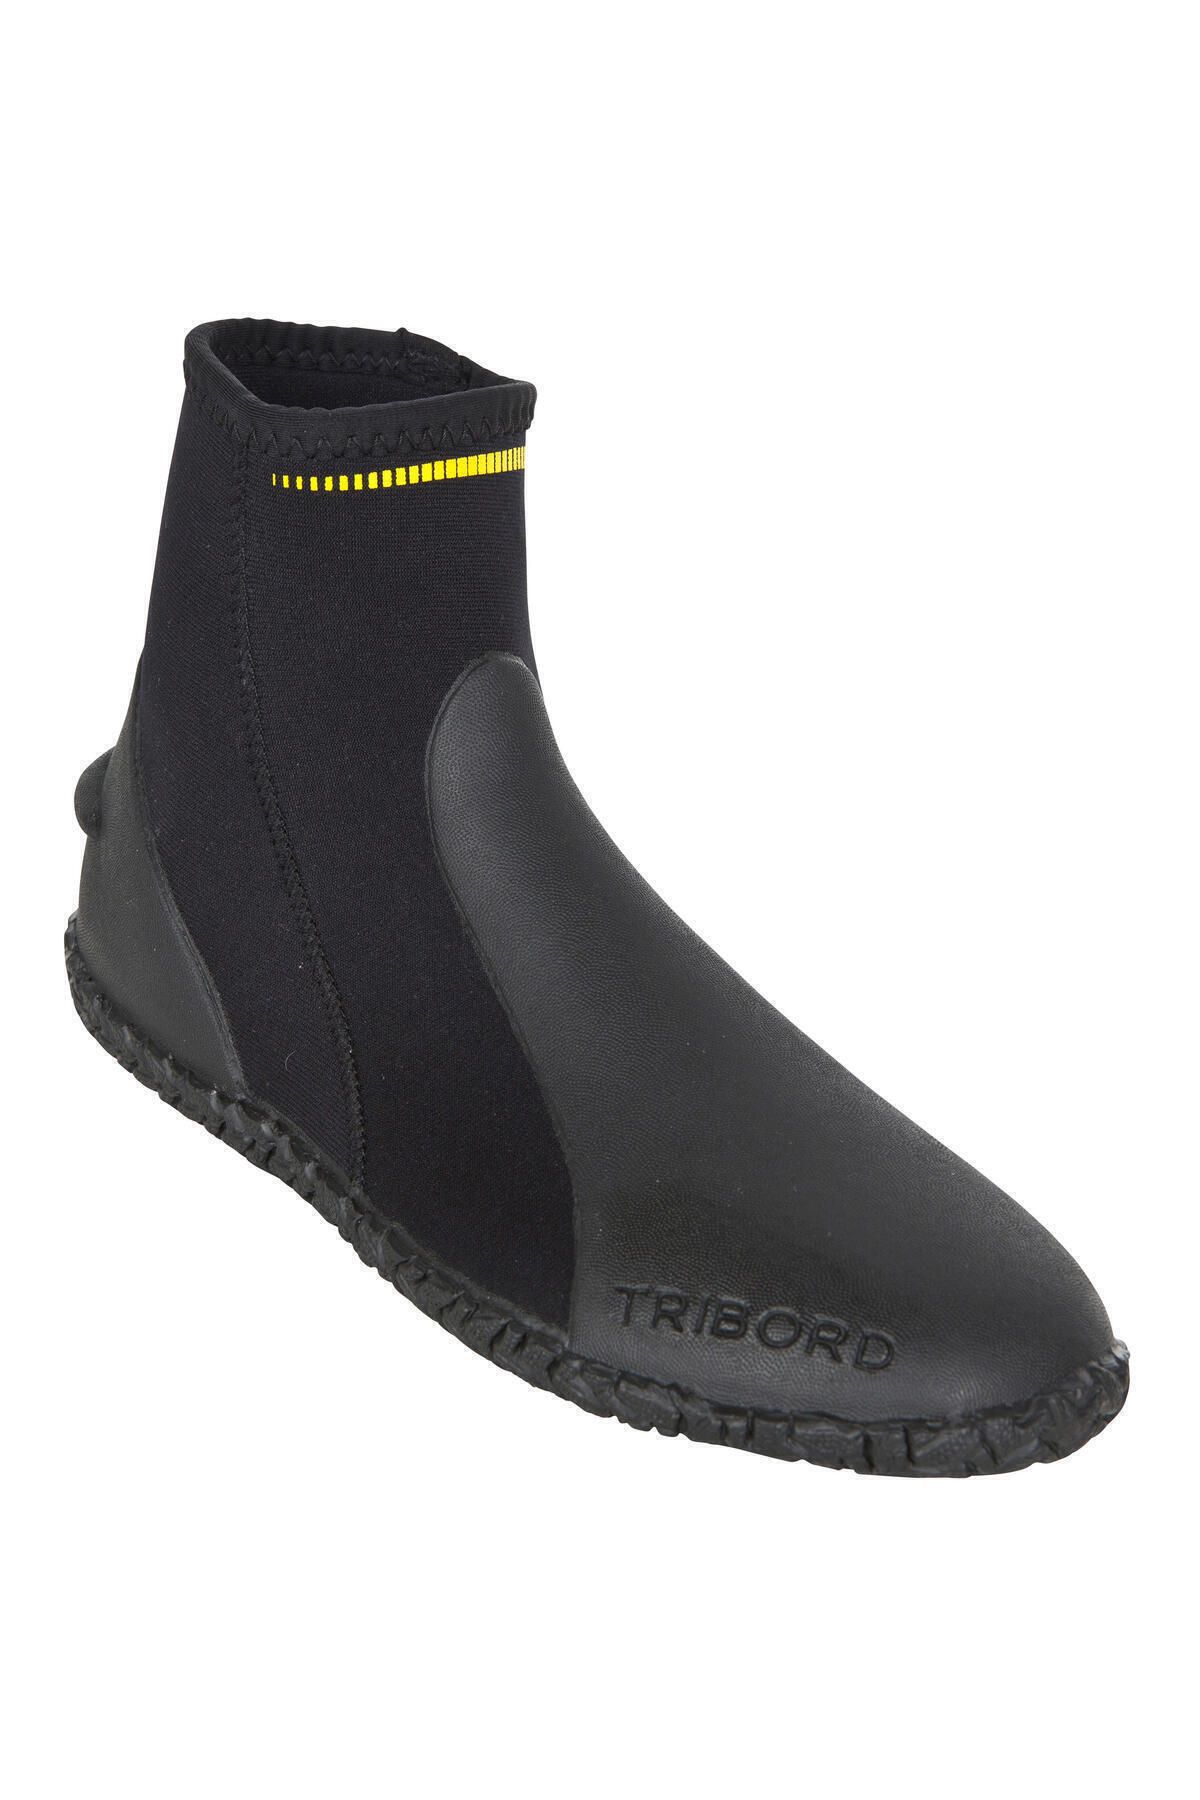 Decathlon Neopren Dalış Ayakkabısı - 3 Mm - Siyah